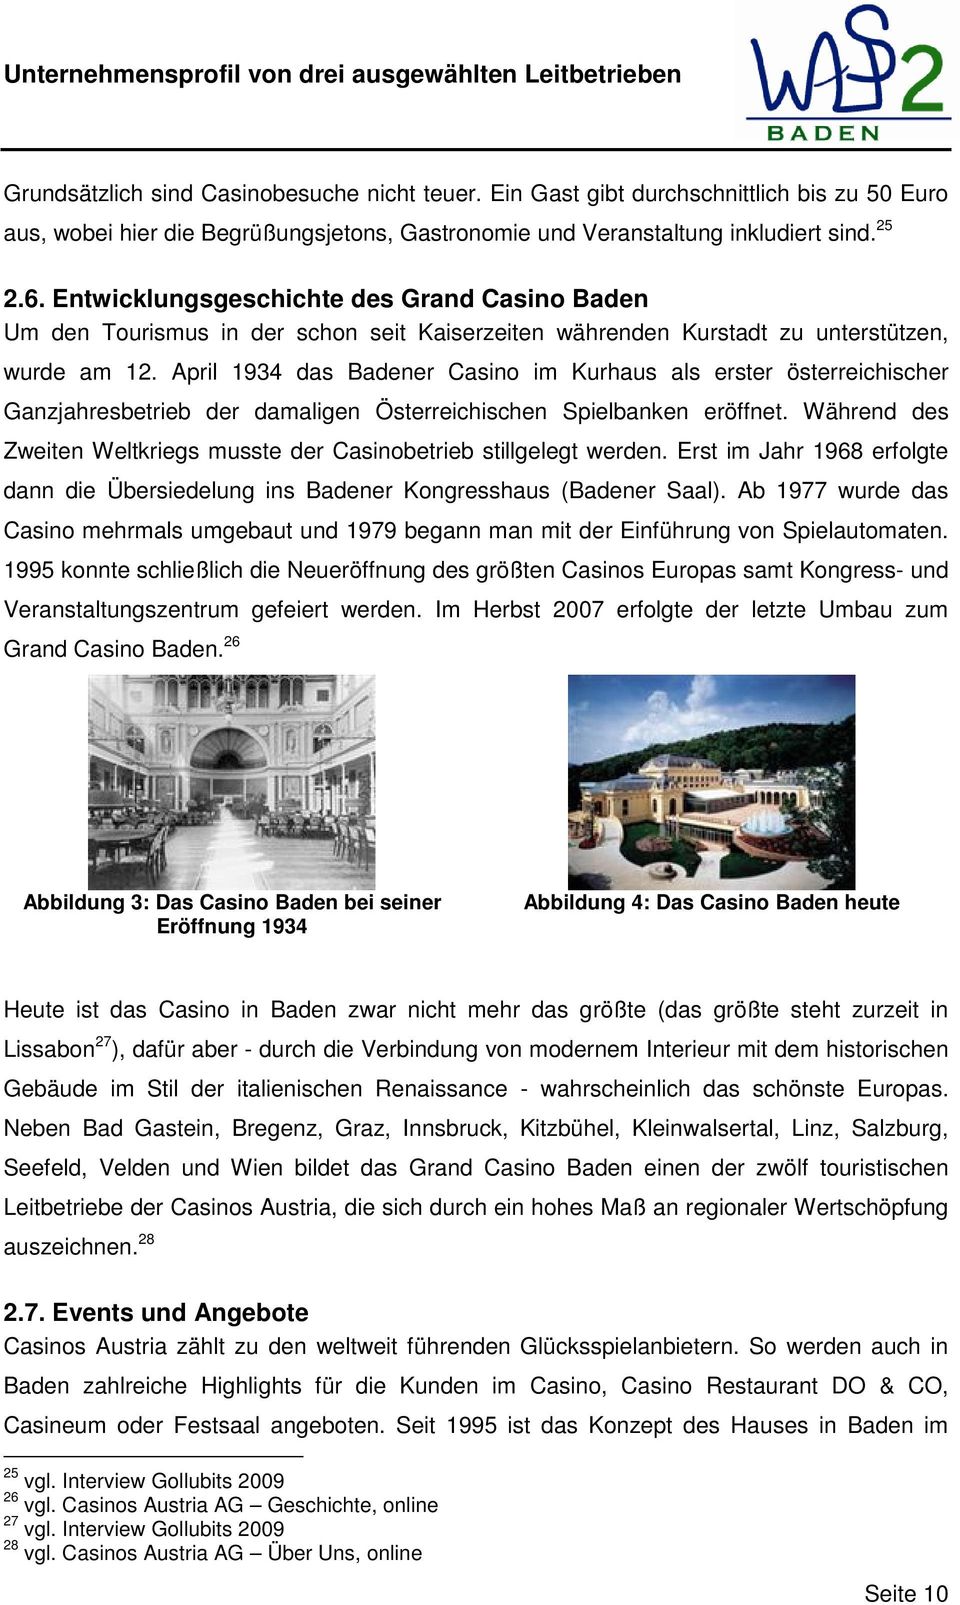 April 1934 das Badener Casino im Kurhaus als erster österreichischer Ganzjahresbetrieb der damaligen Österreichischen Spielbanken eröffnet.